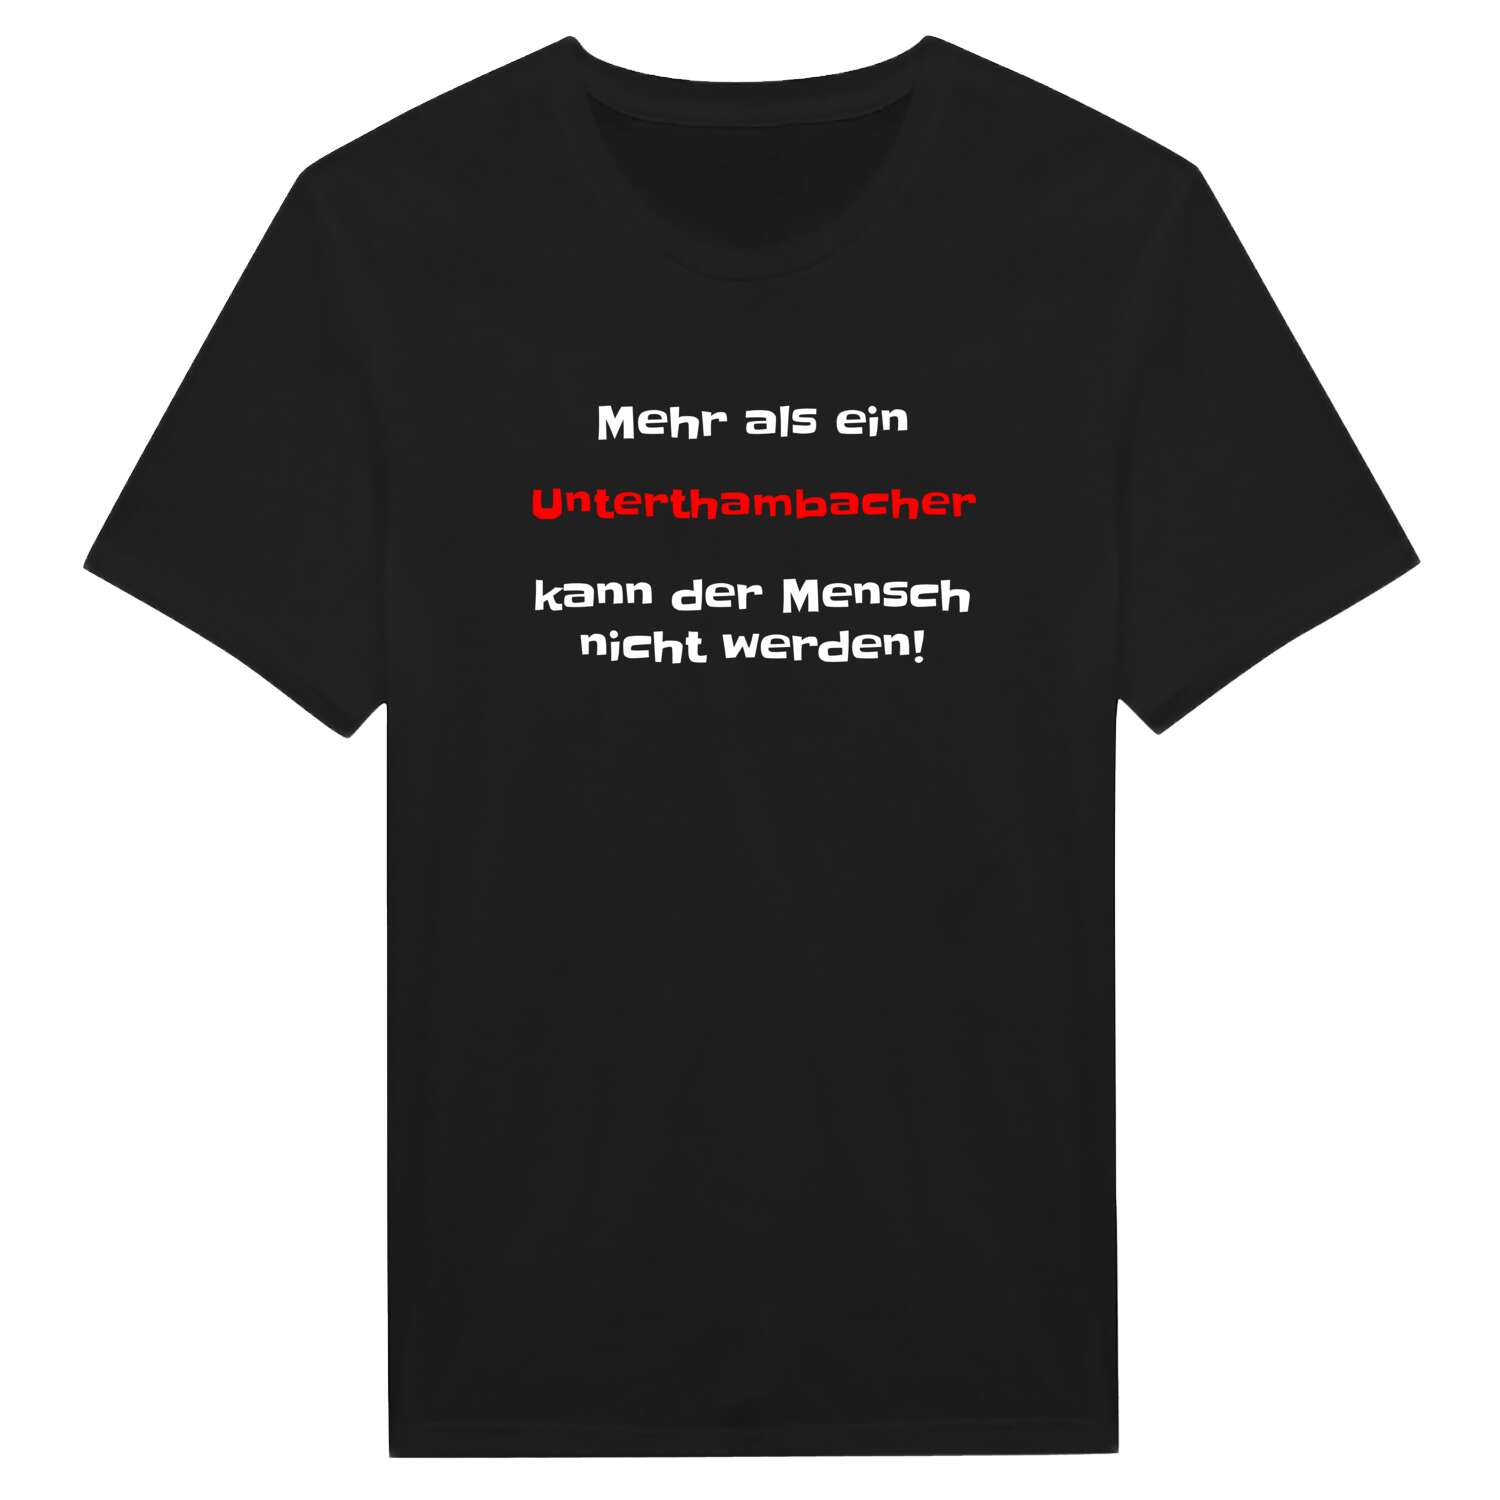 Unterthambach T-Shirt »Mehr als ein«